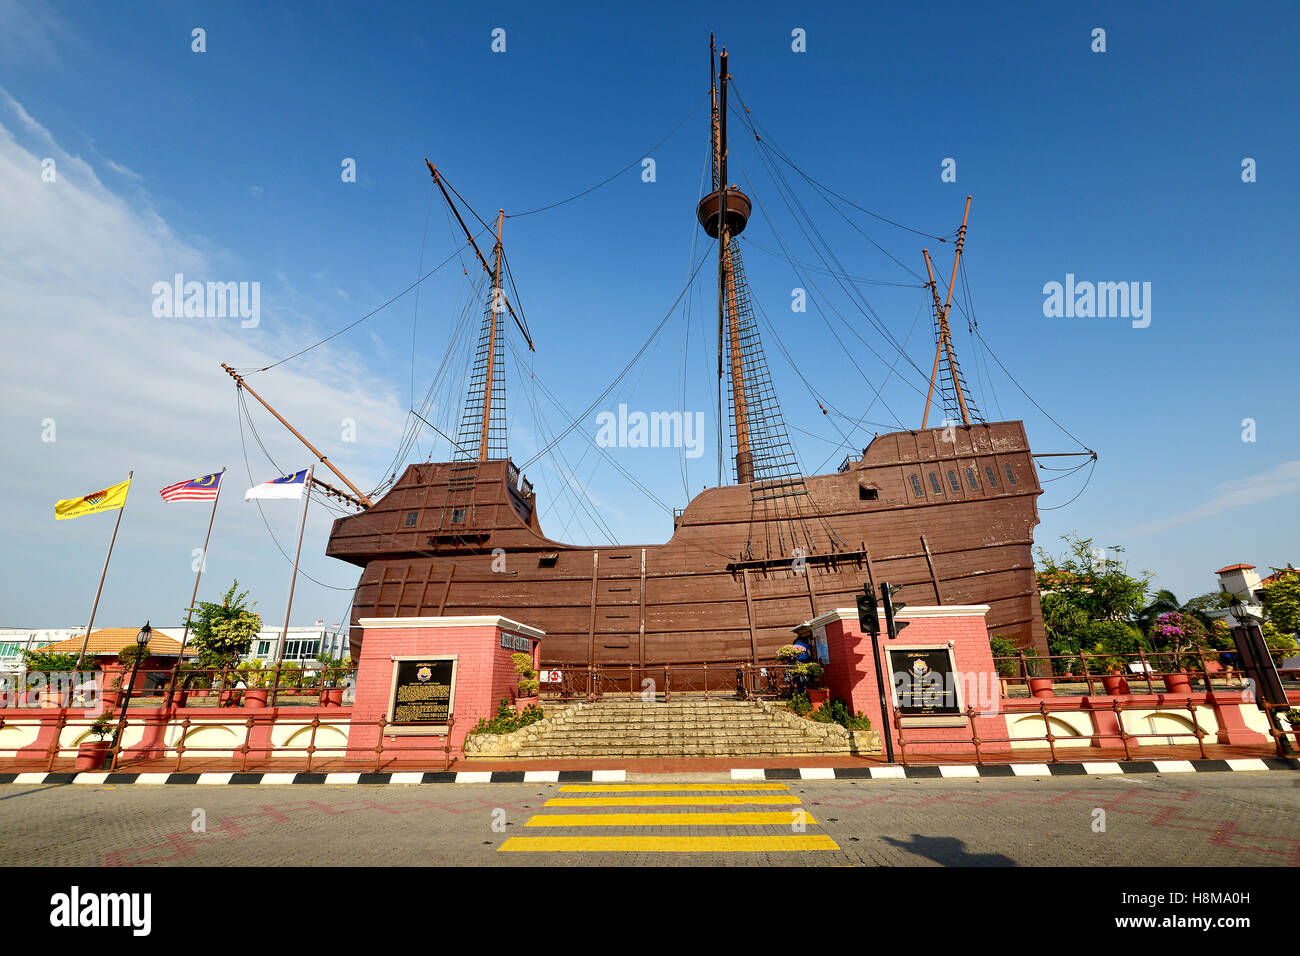 Maritime Museum (Muzium Samudera), Malacca, Malaysia. Stock Photo